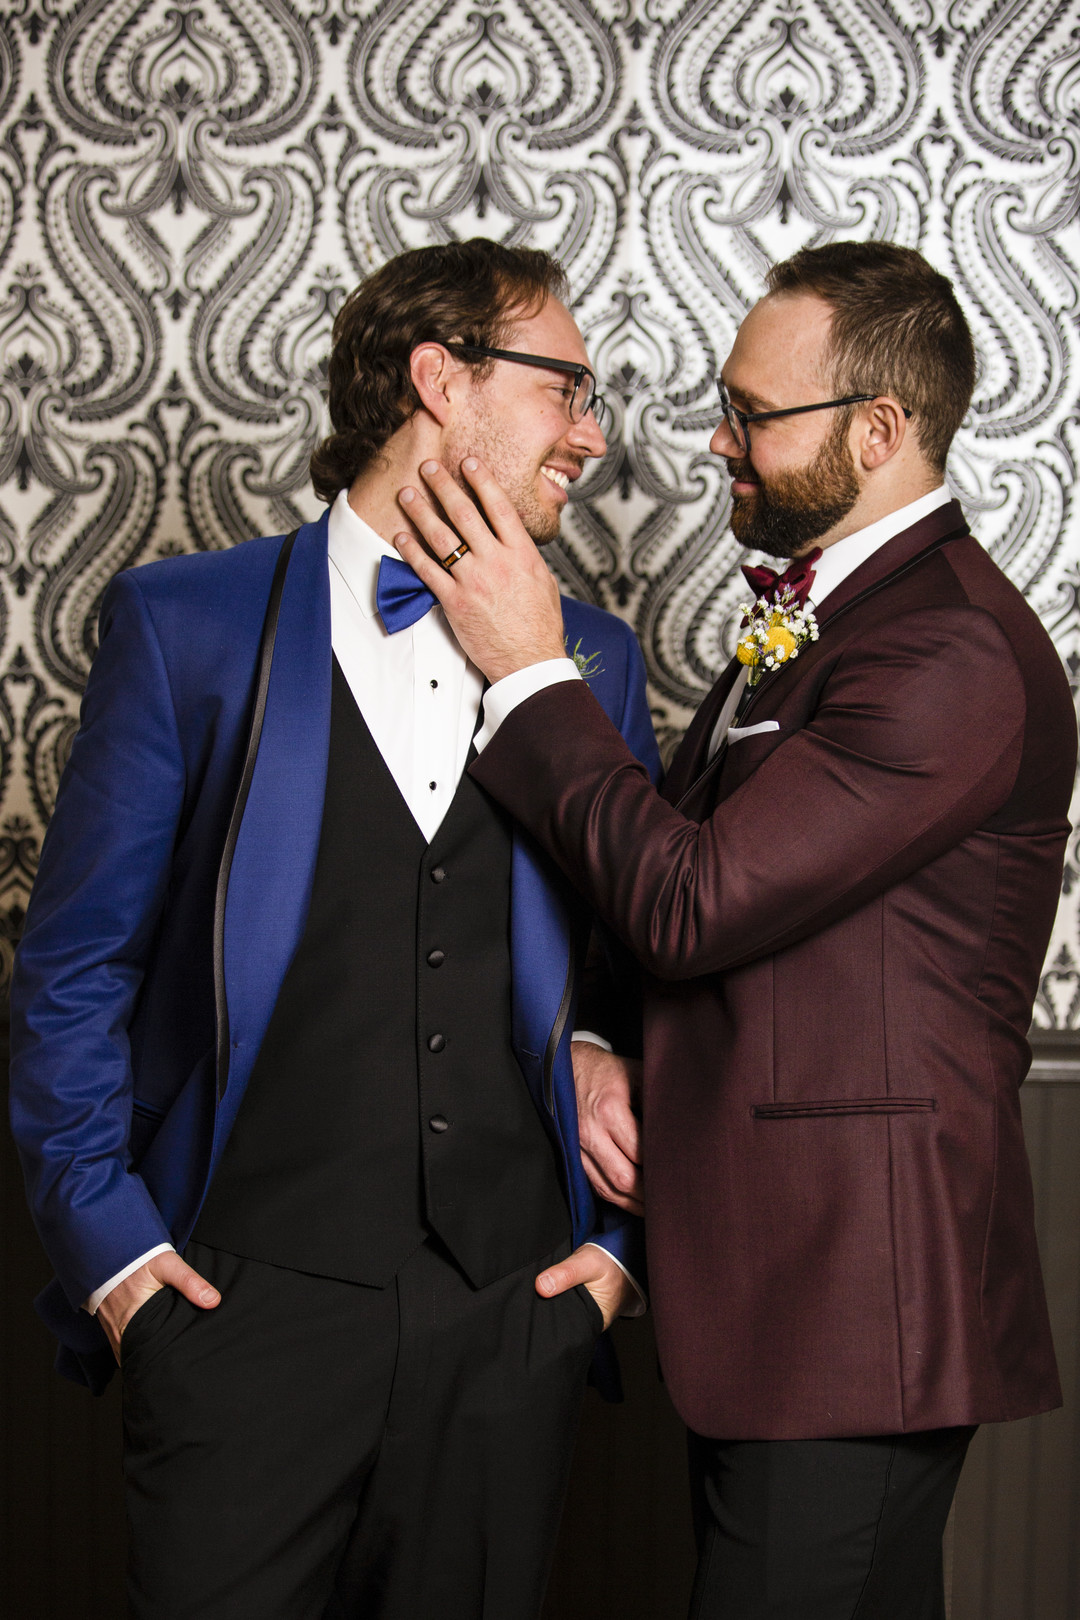 Jewel Tone LGBTQ Wedding Inspiration